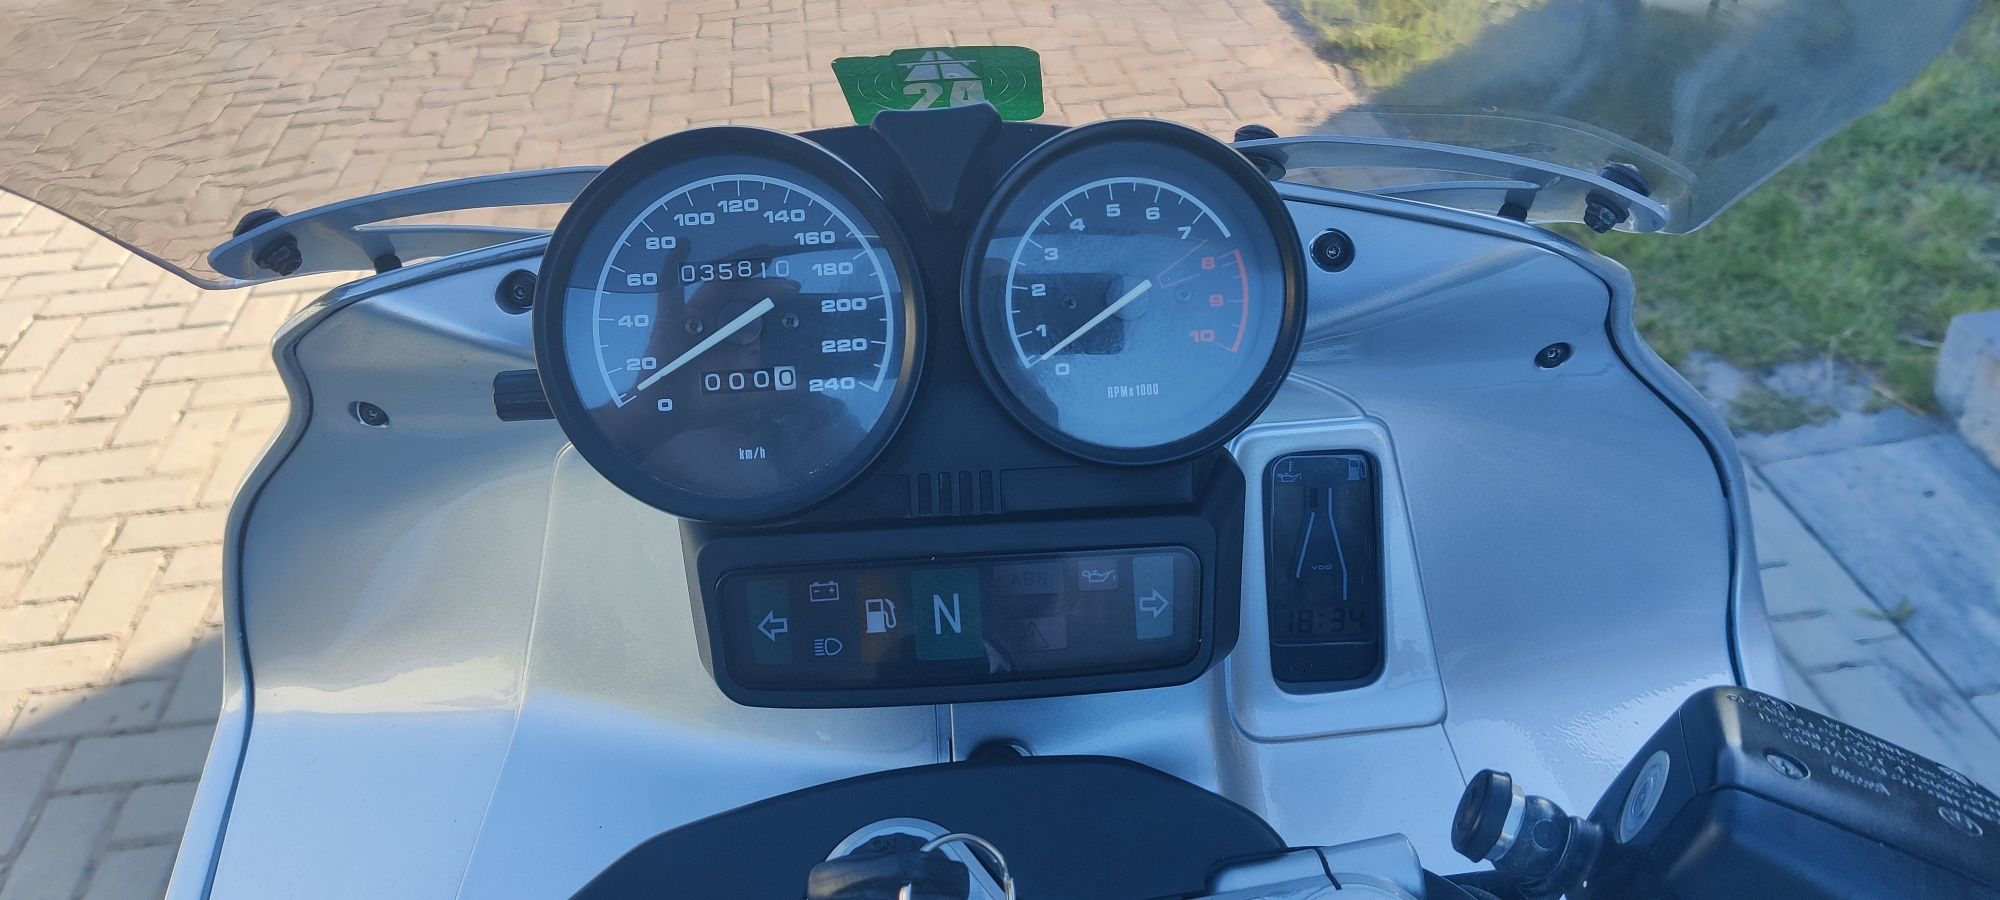 BMW R1150RS - przebieg 36 tyś. km